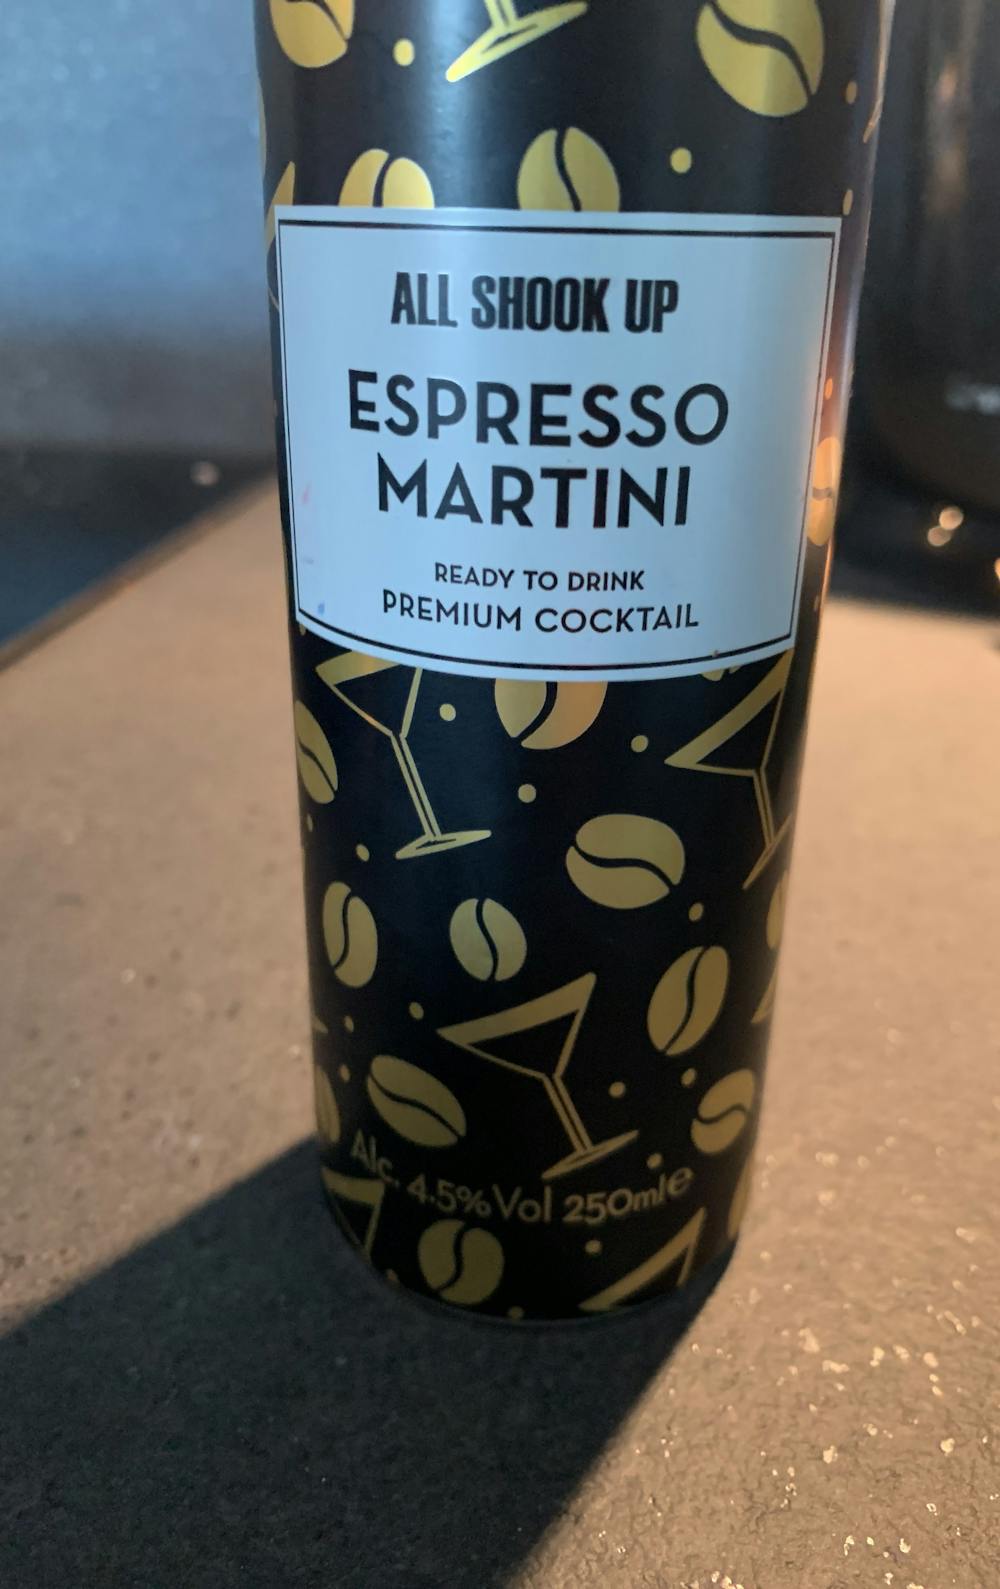 All shook up, espresso martini, Global Brands 